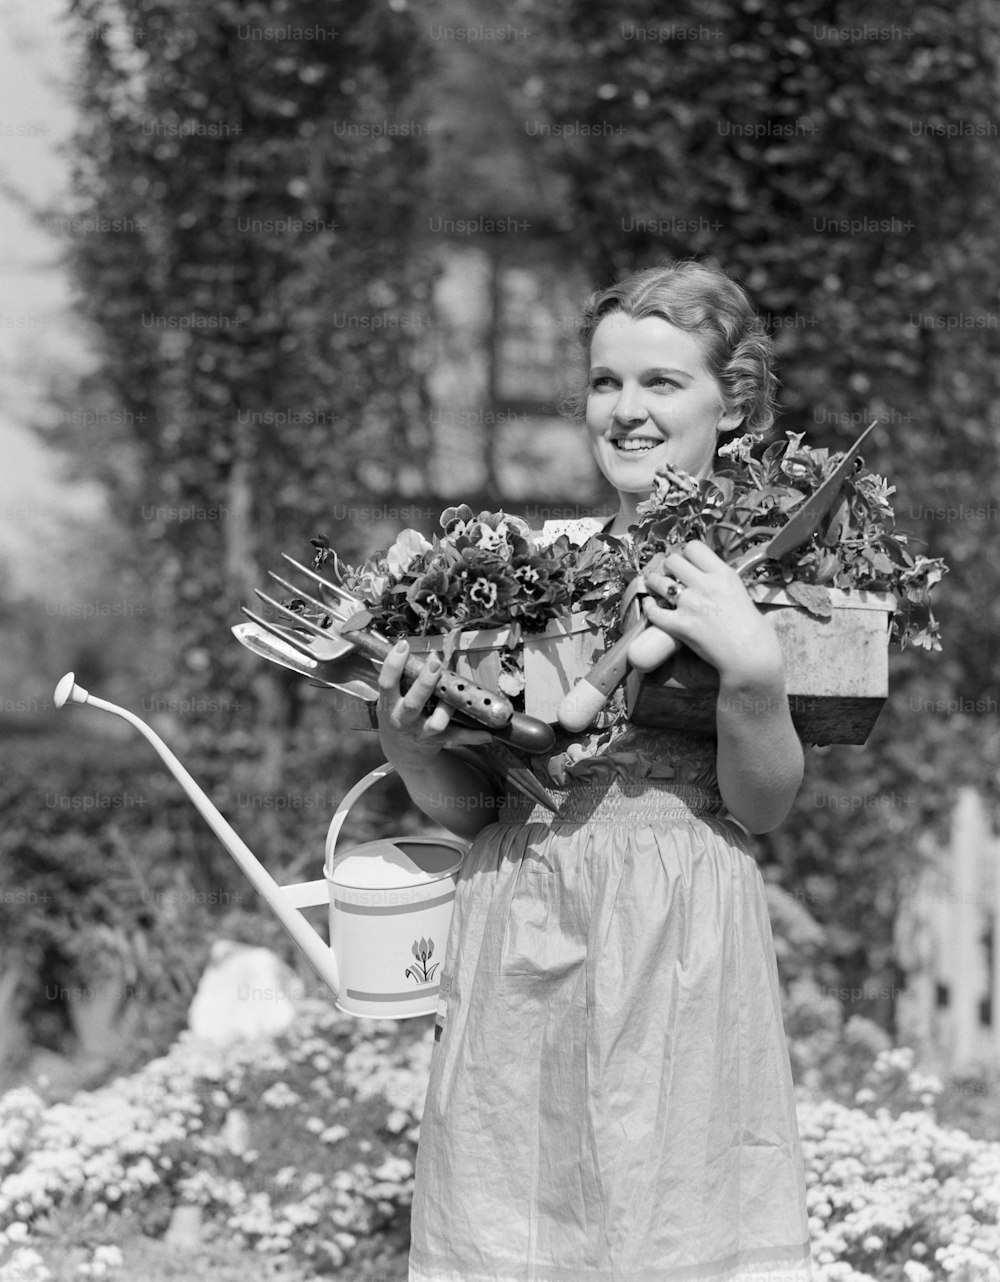 VEREINIGTE STAATEN - CIRCA 1930er Jahre: Frau steht im Garten, lächelt, die Arme voll mit Gießkanne, Gartengeräten und Topfpflanzen, Porträt.